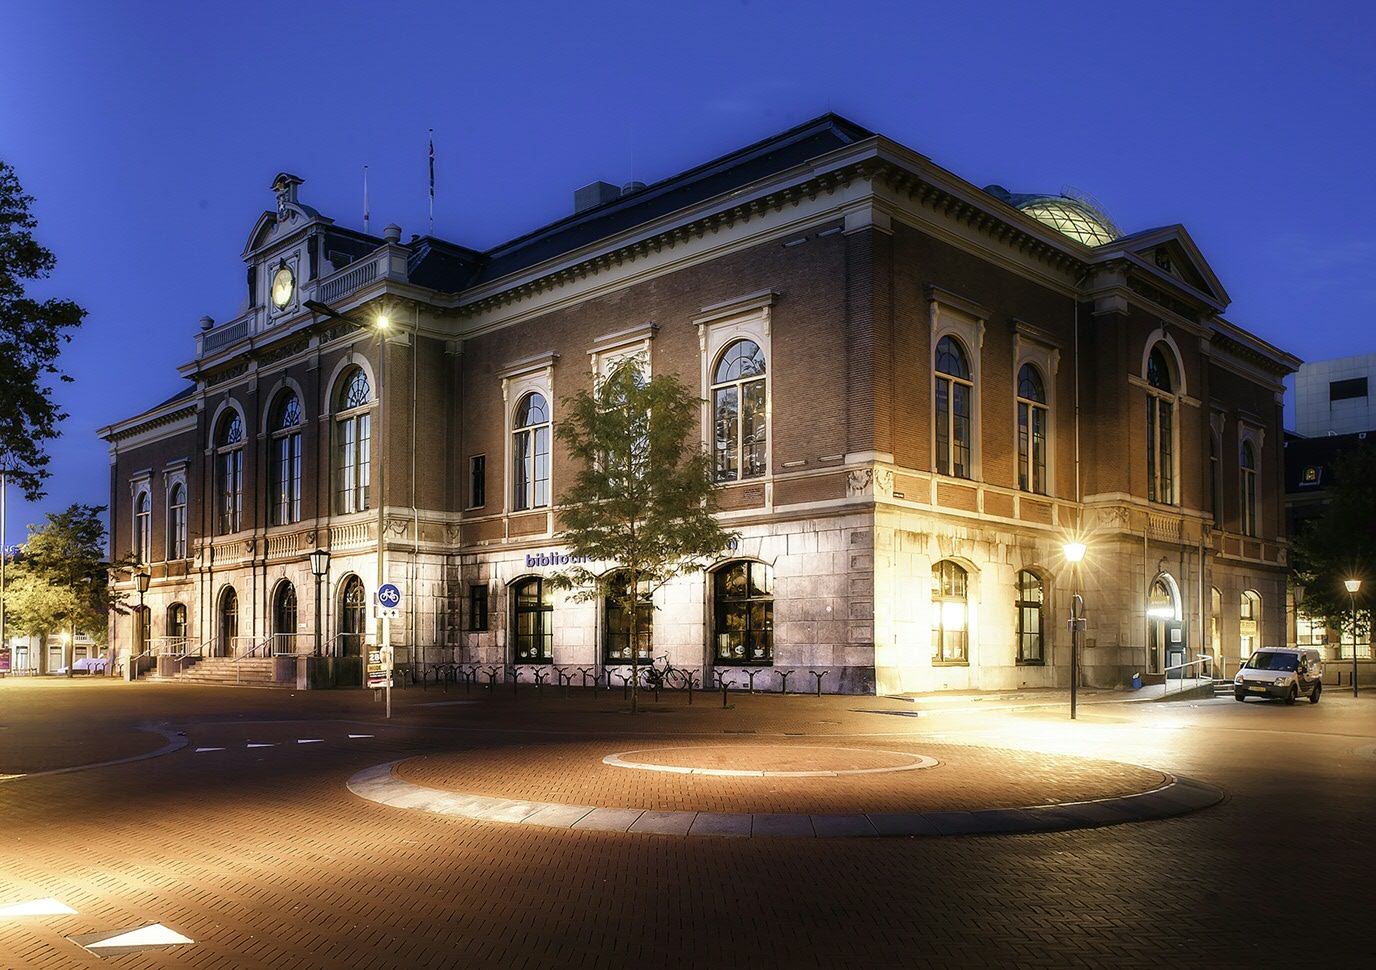 Trade center (Photo: Peter van der Rol)